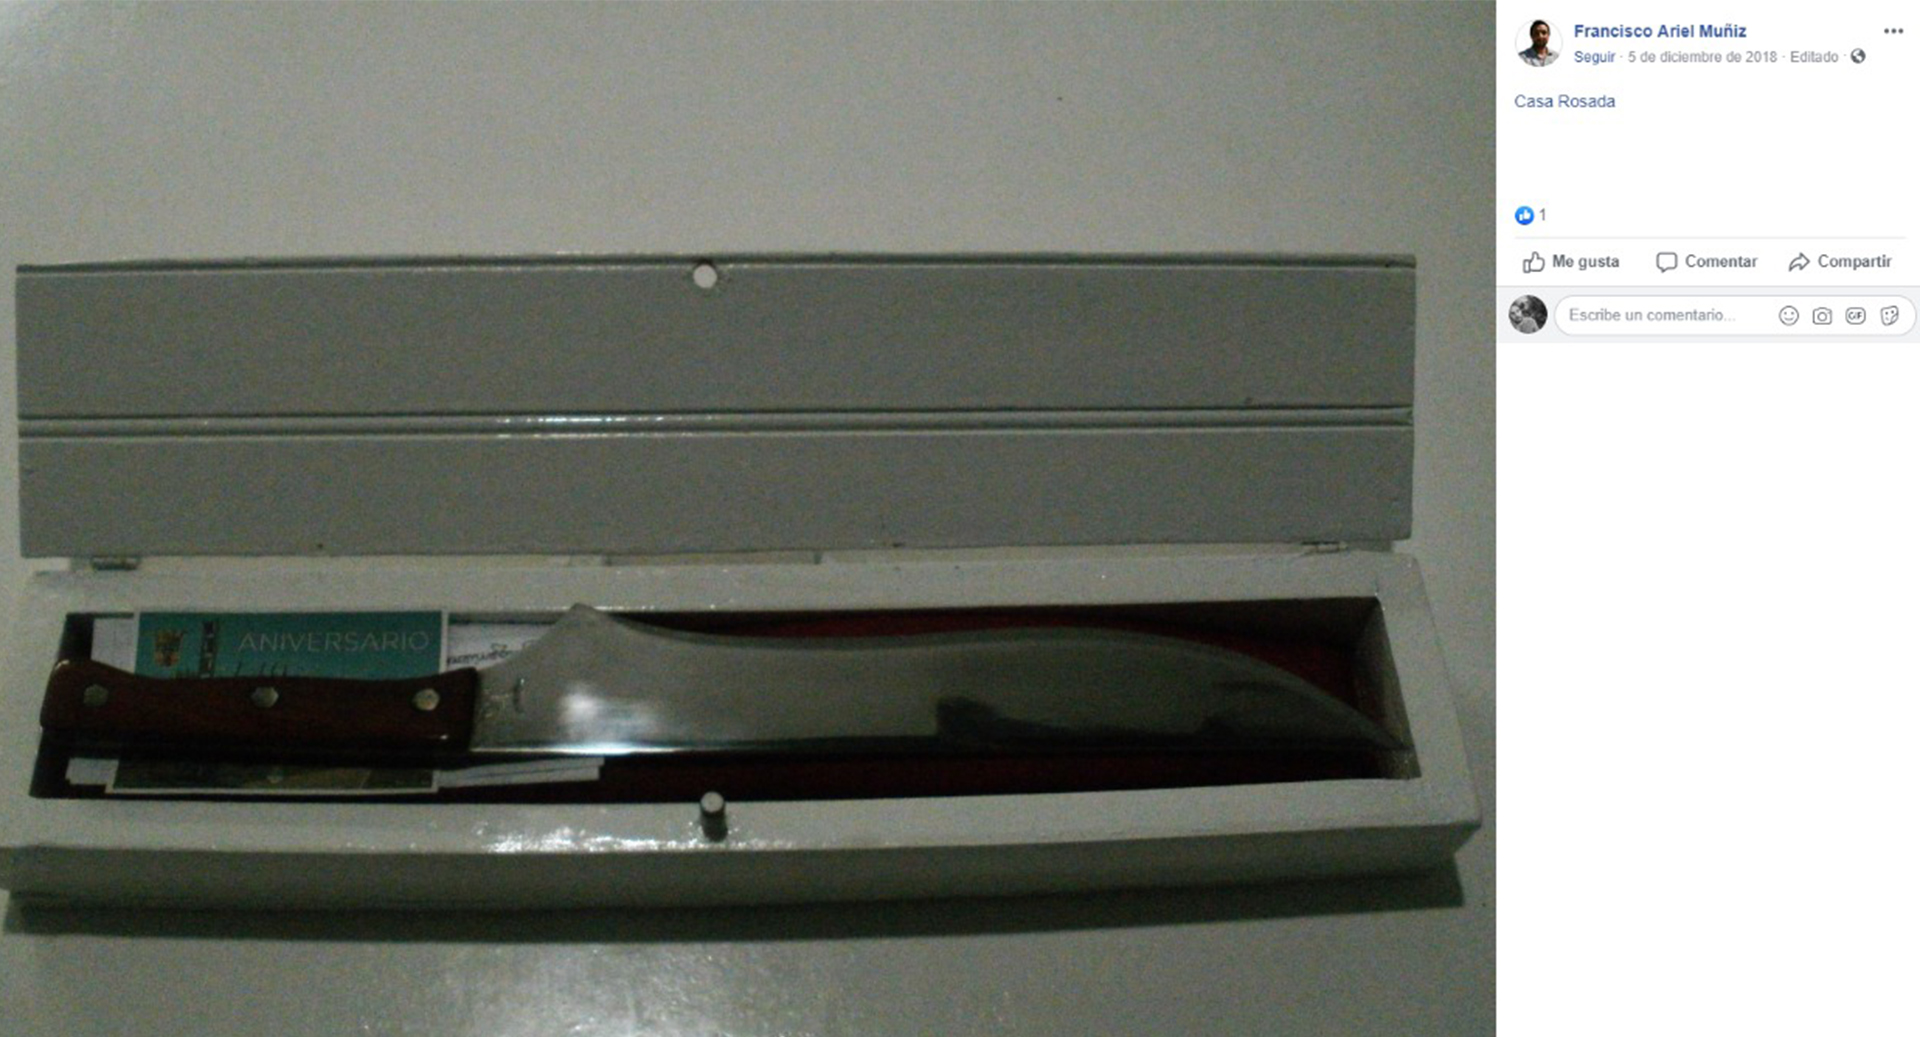 Las dos publicaciones de diciembre de 2018, cuando etiquetó a la Casa Rosada y mostró un cuchillo, sacado de una caja con la inscripción General Pinto y el logo del PRO